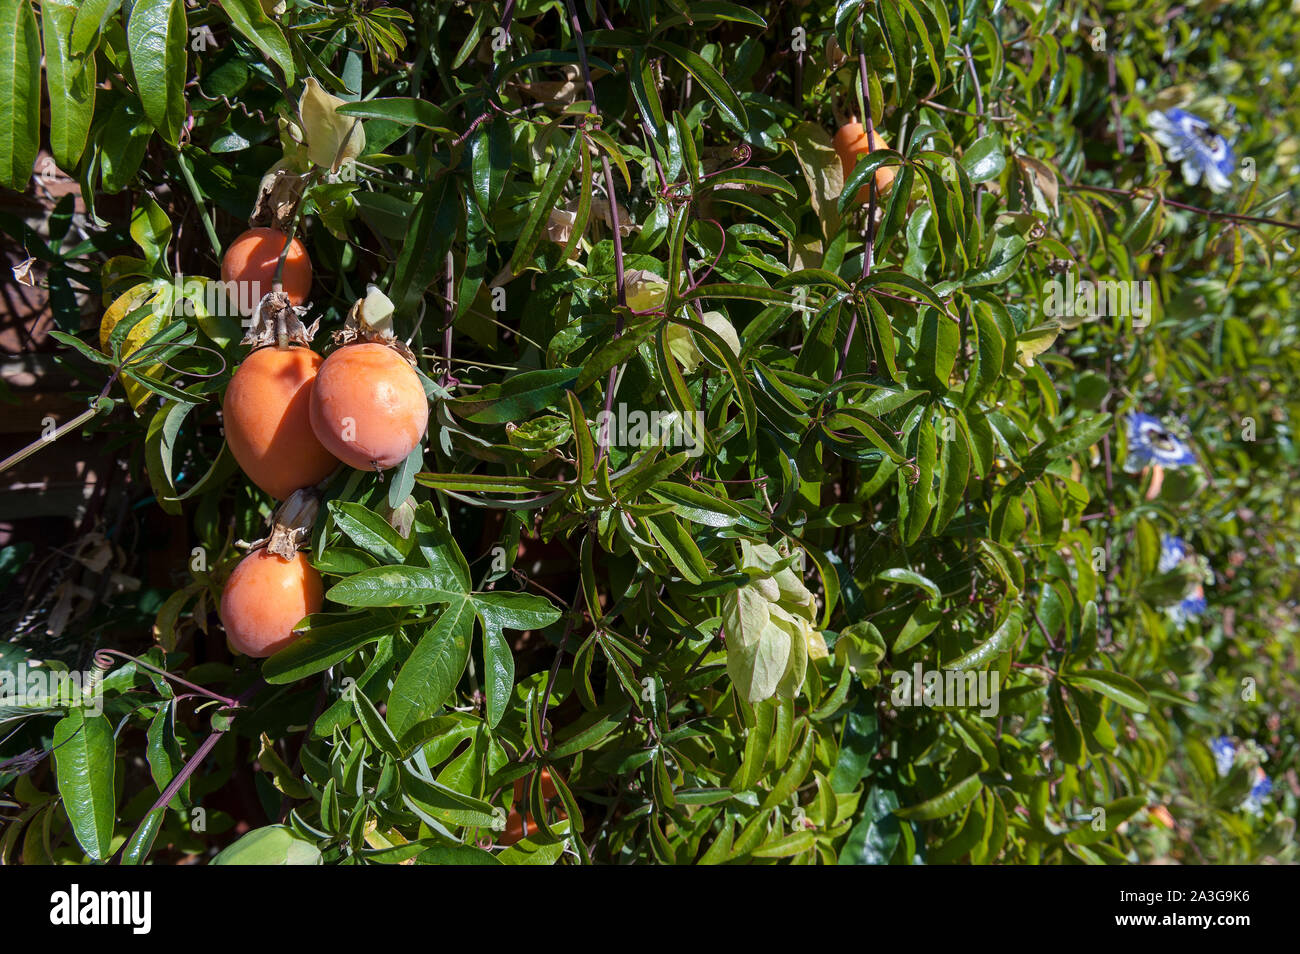 Orange mûre et de mûrissement des fruits en forme d'oeuf vert de la passiflore Passiflora caerulea, usine, couronne bleue, contre le feuillage dense Banque D'Images